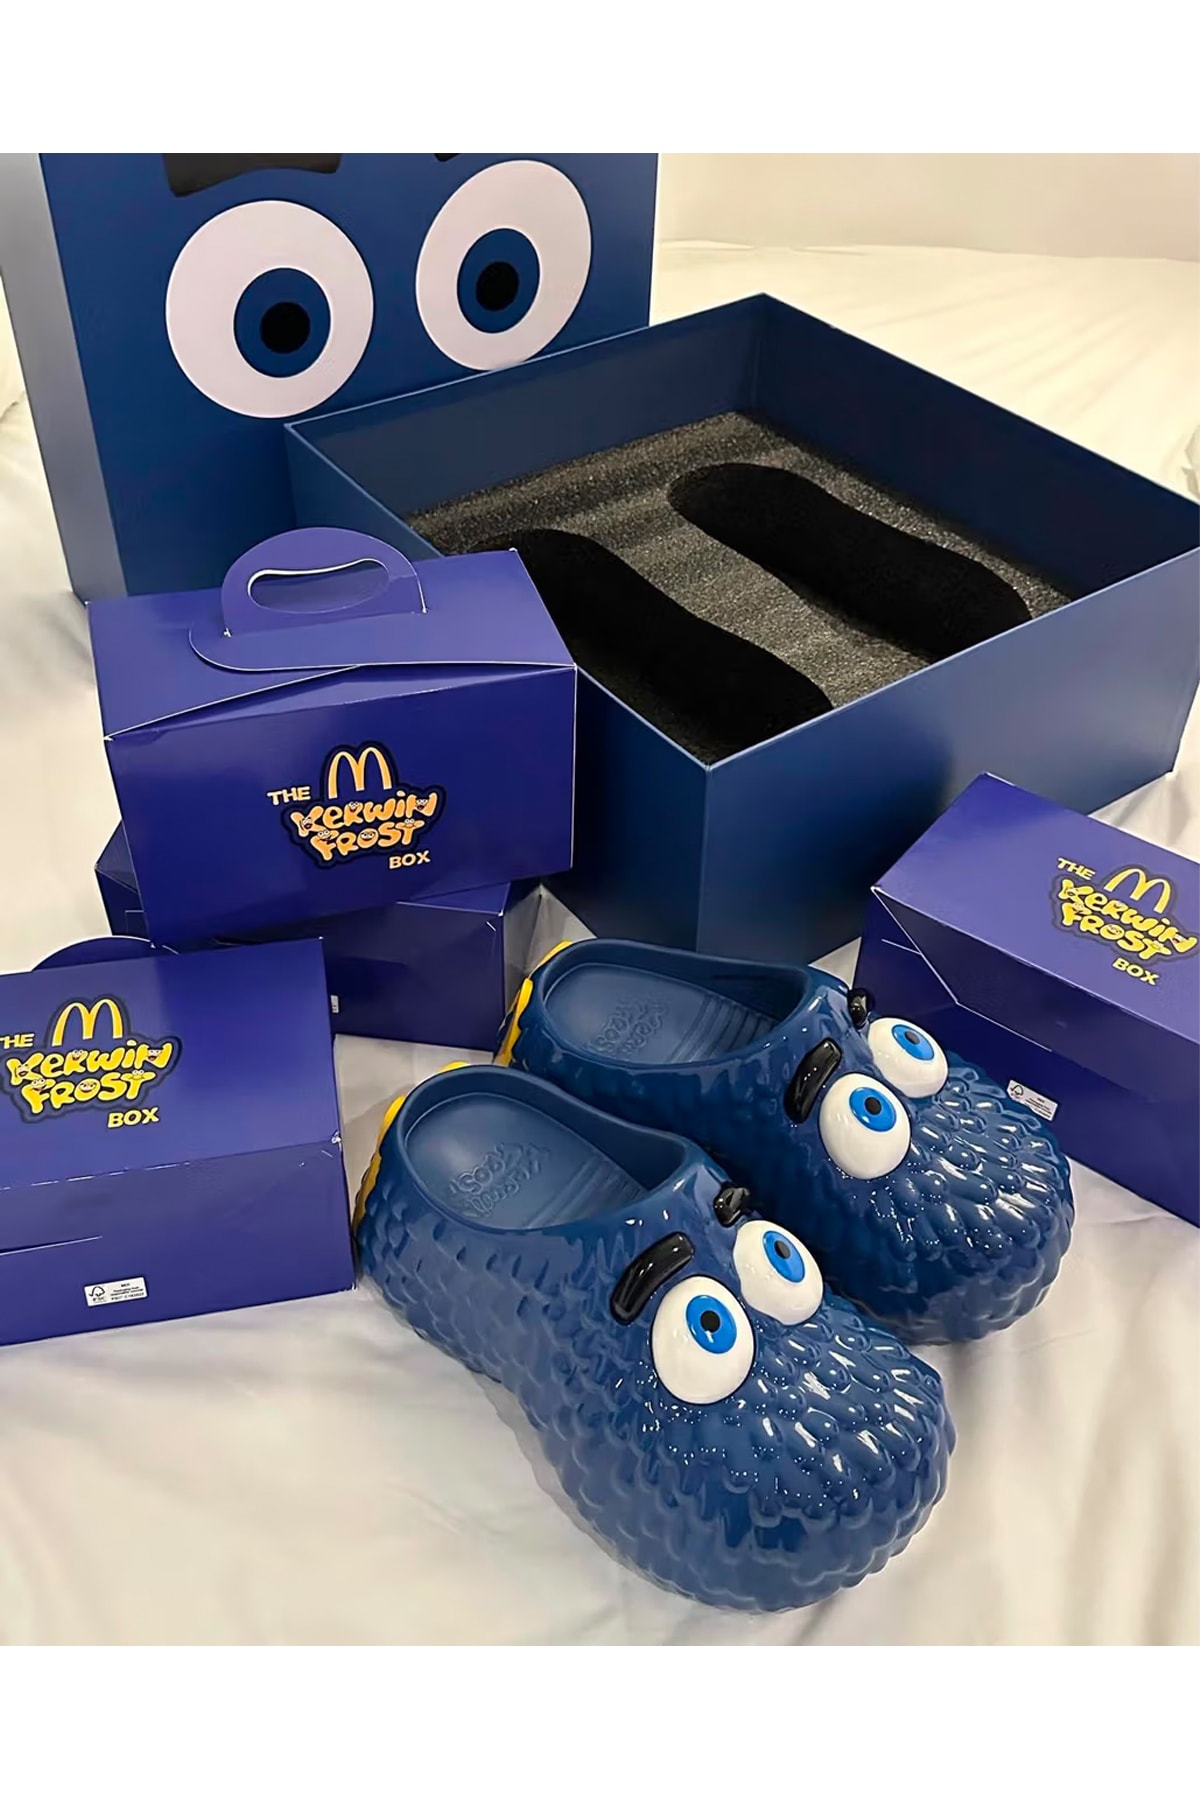 カーウィン・フロストと『マクドナルド』よりフライガイをイメージしたクロッグサンダルが登場　kerwin frost mcdonalds fry guy clogs shoes blue collaboration official release date info photos price store list buying guide